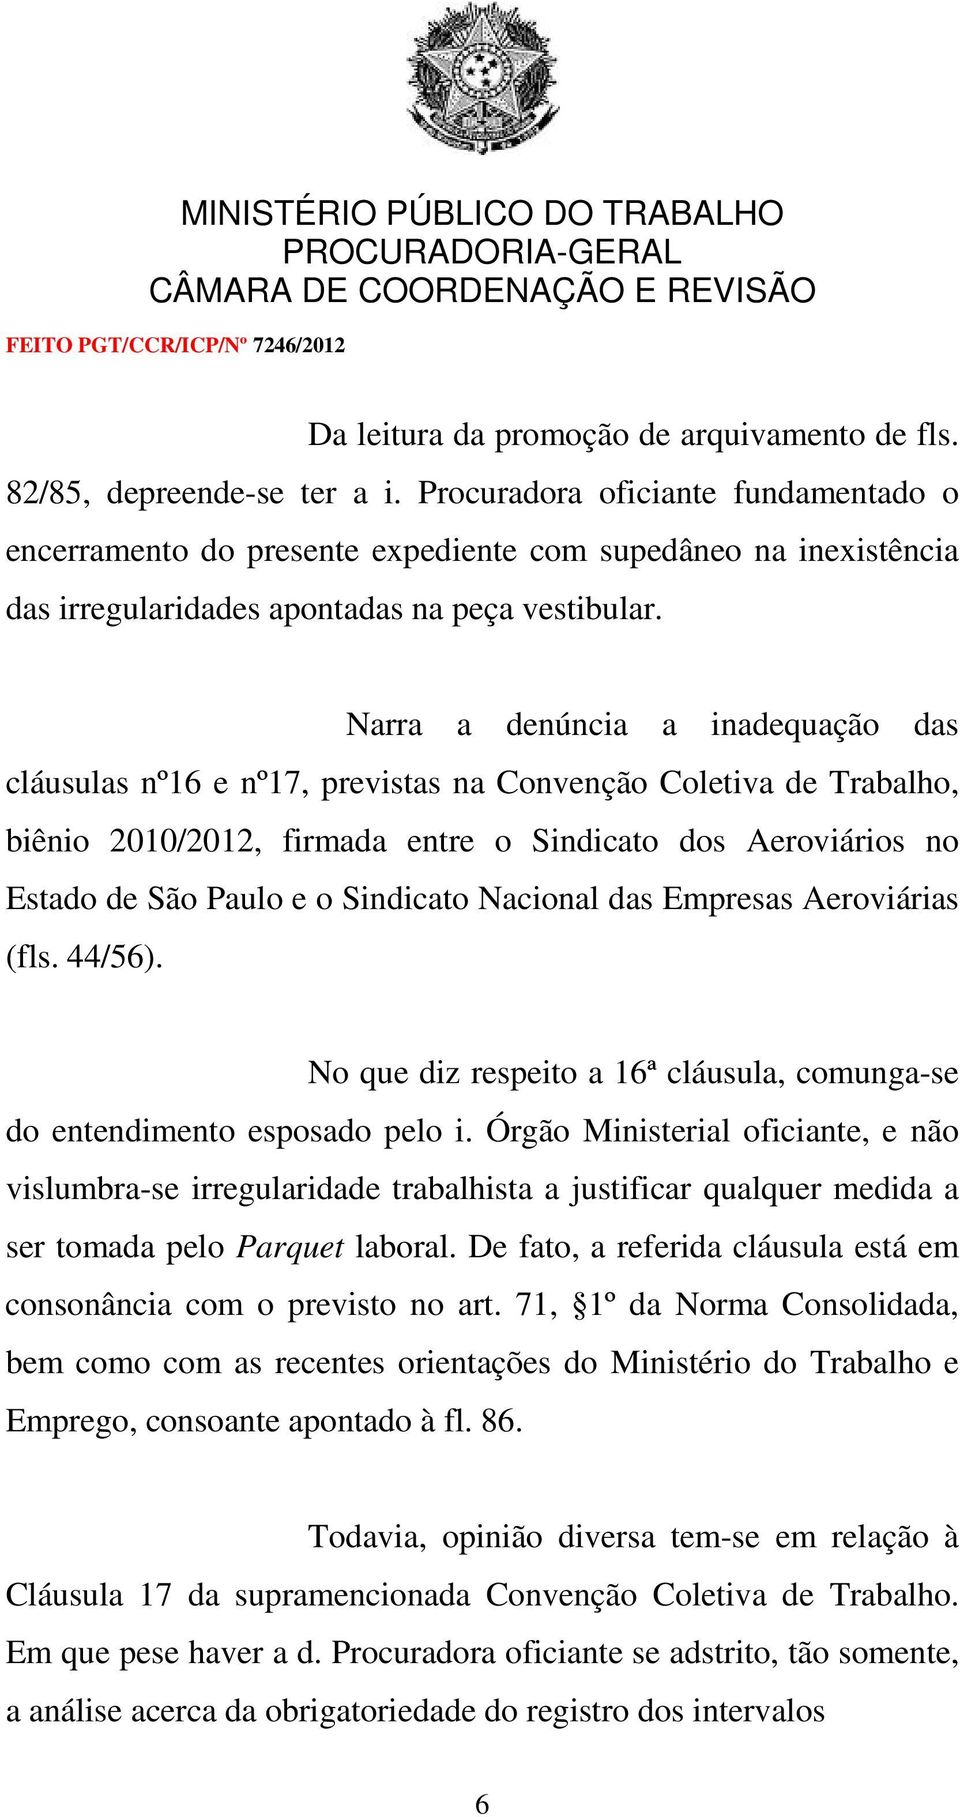 Narra a denúncia a inadequação das cláusulas nº16 e nº17, previstas na Convenção Coletiva de Trabalho, biênio 2010/2012, firmada entre o Sindicato dos Aeroviários no Estado de São Paulo e o Sindicato